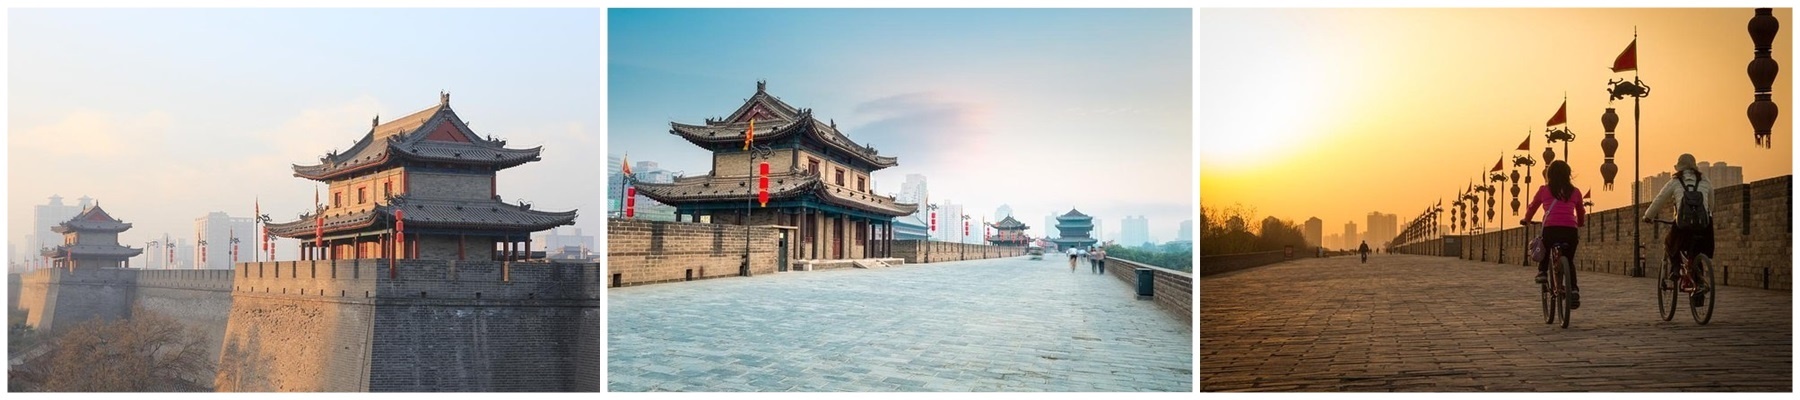 กำแพงเมืองซีอาน (Xi’an City Wall: 西安城墙)